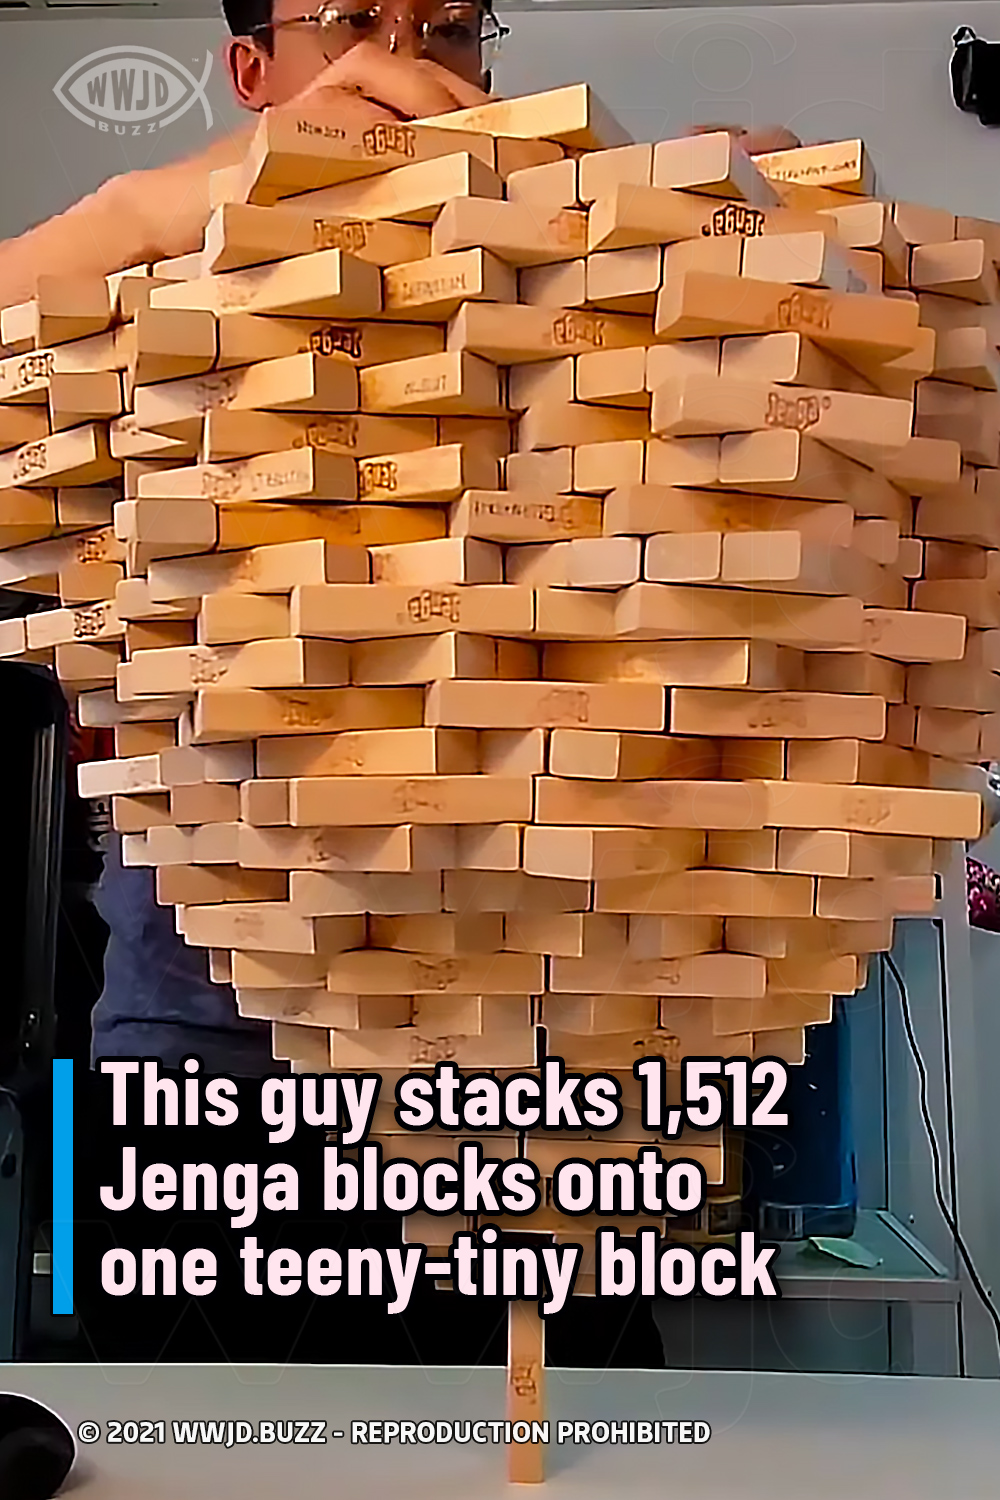 This guy stacks 1,512 Jenga blocks onto one teeny-tiny block